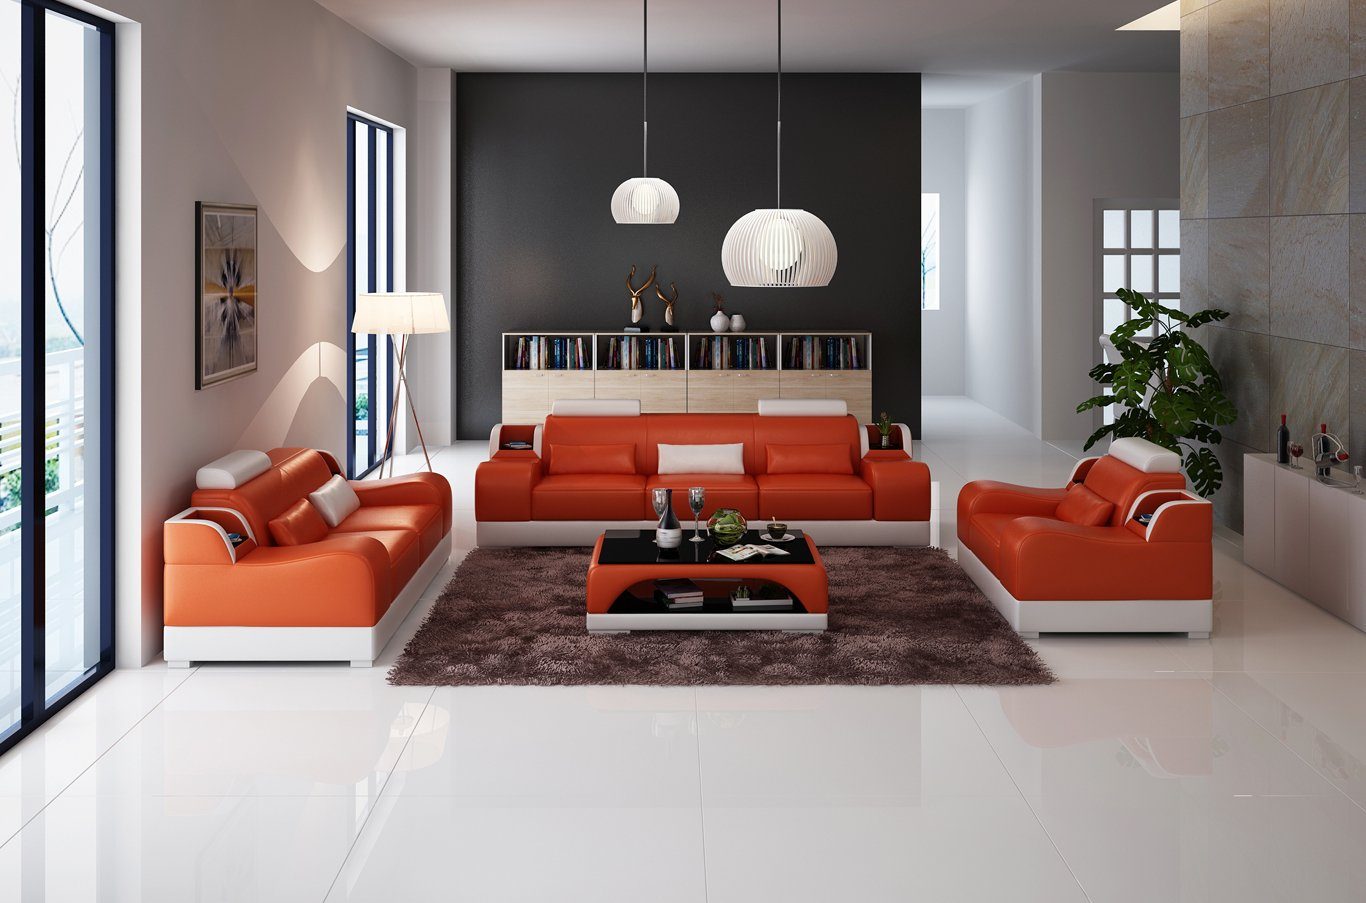 JVmoebel Sofa 3+2+2 Europe Polster Made Luxus in Orange/Weiß Couchen Set Sitzer Design Sofa Neu, Modern Couch